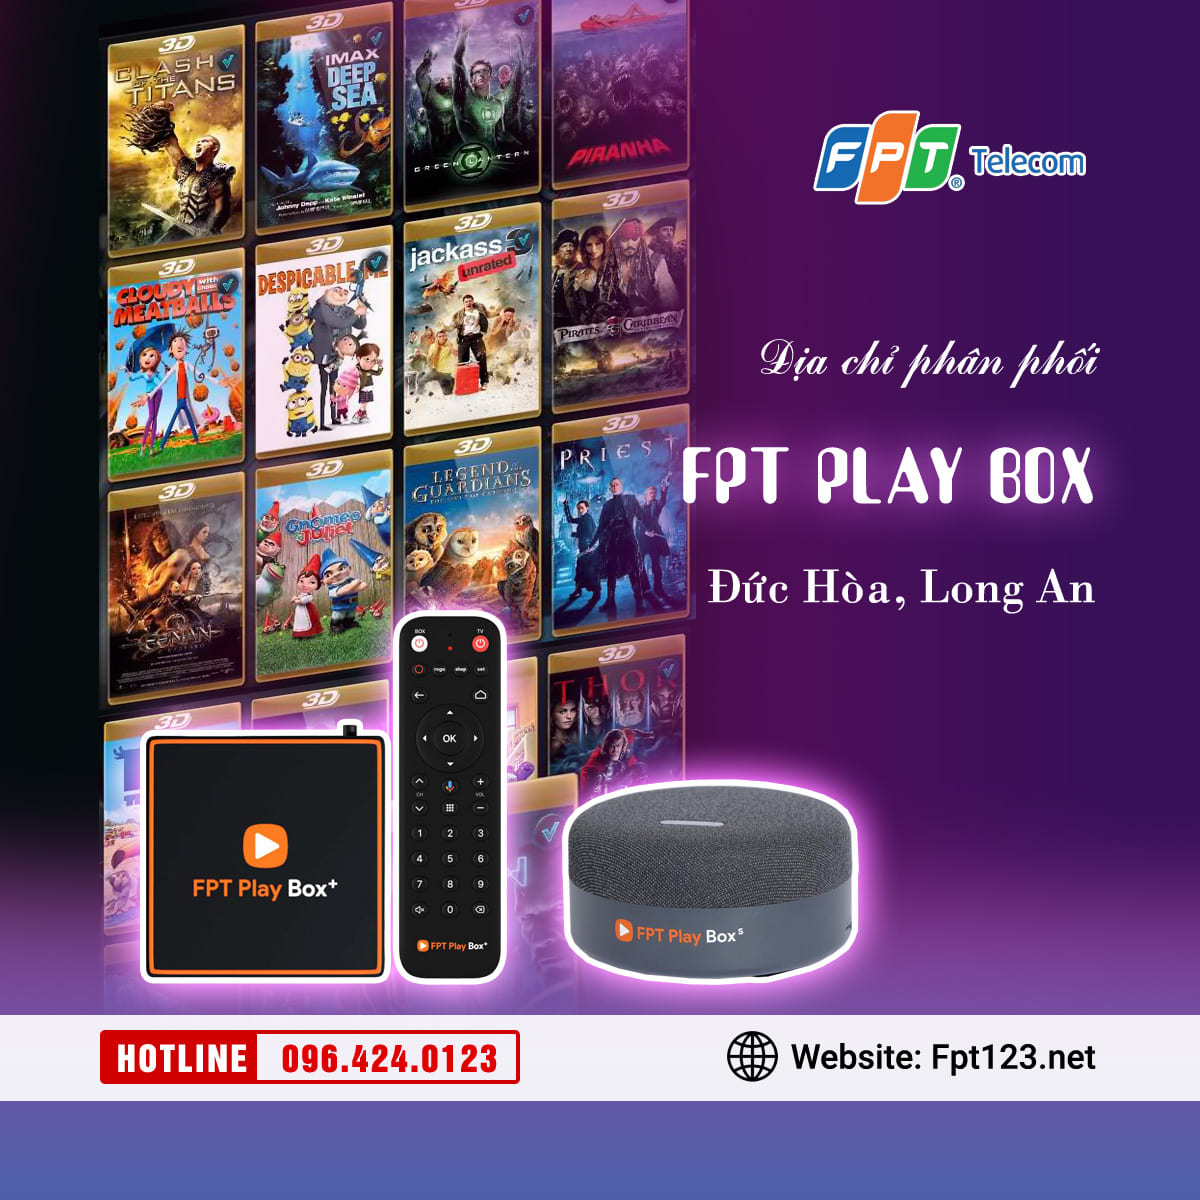 Địa chỉ phân phối FPT Play Box tại Đức Hòa, Long An